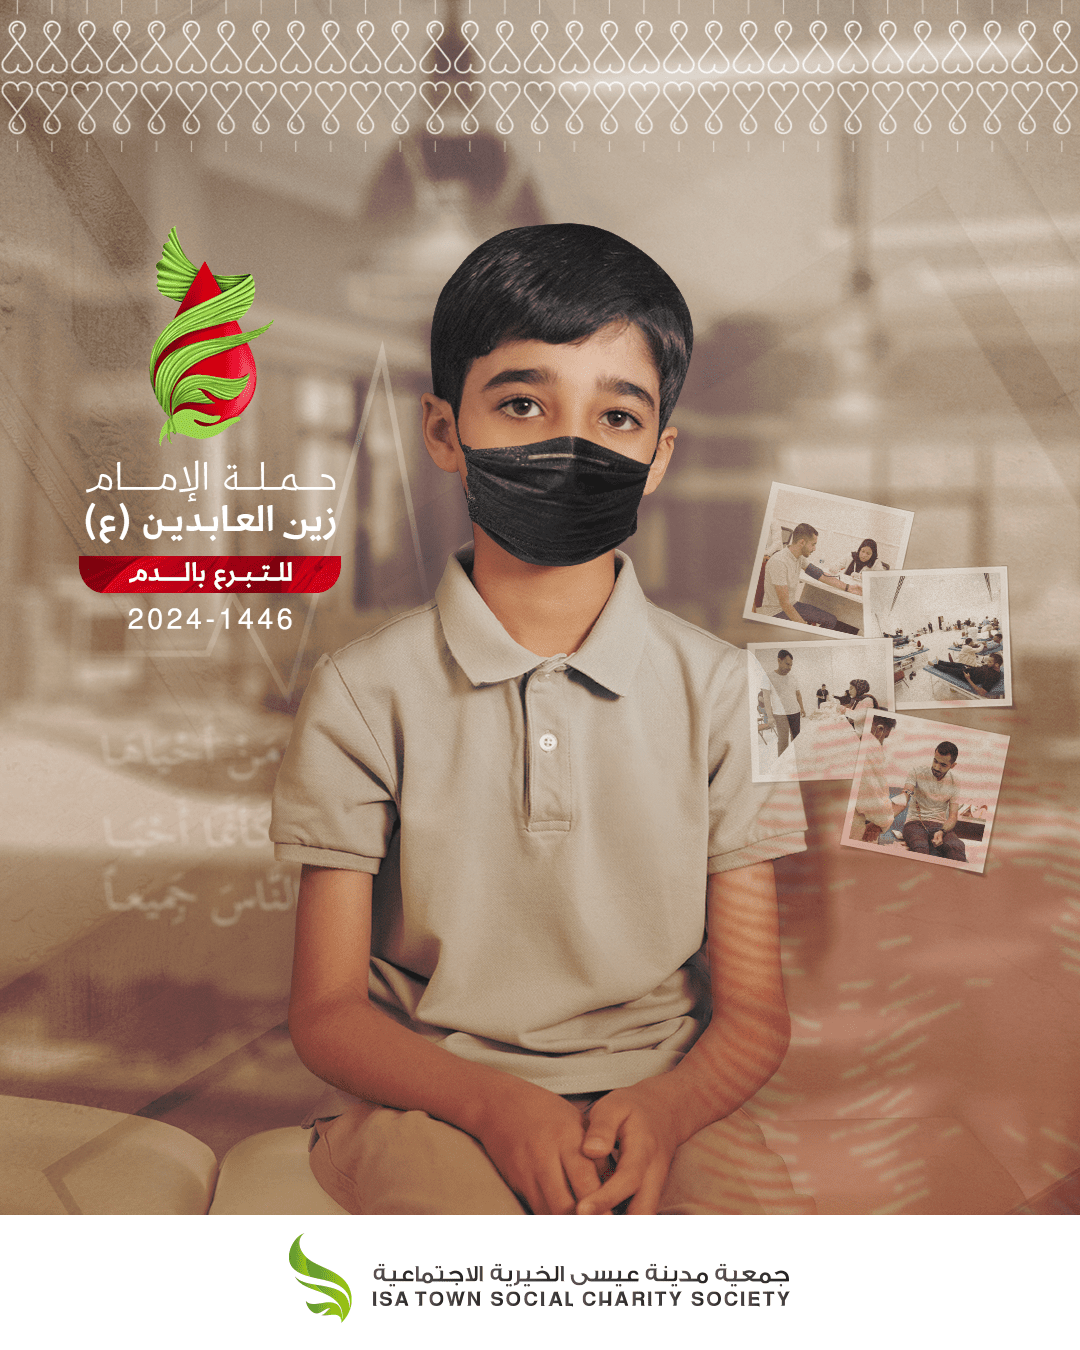 خيرية مدينة عيسى و بالشراكة مع وزارة الصحة تُطلِق حملة الإمام زين العابدين (ع) في نسختها الـ ٢٤